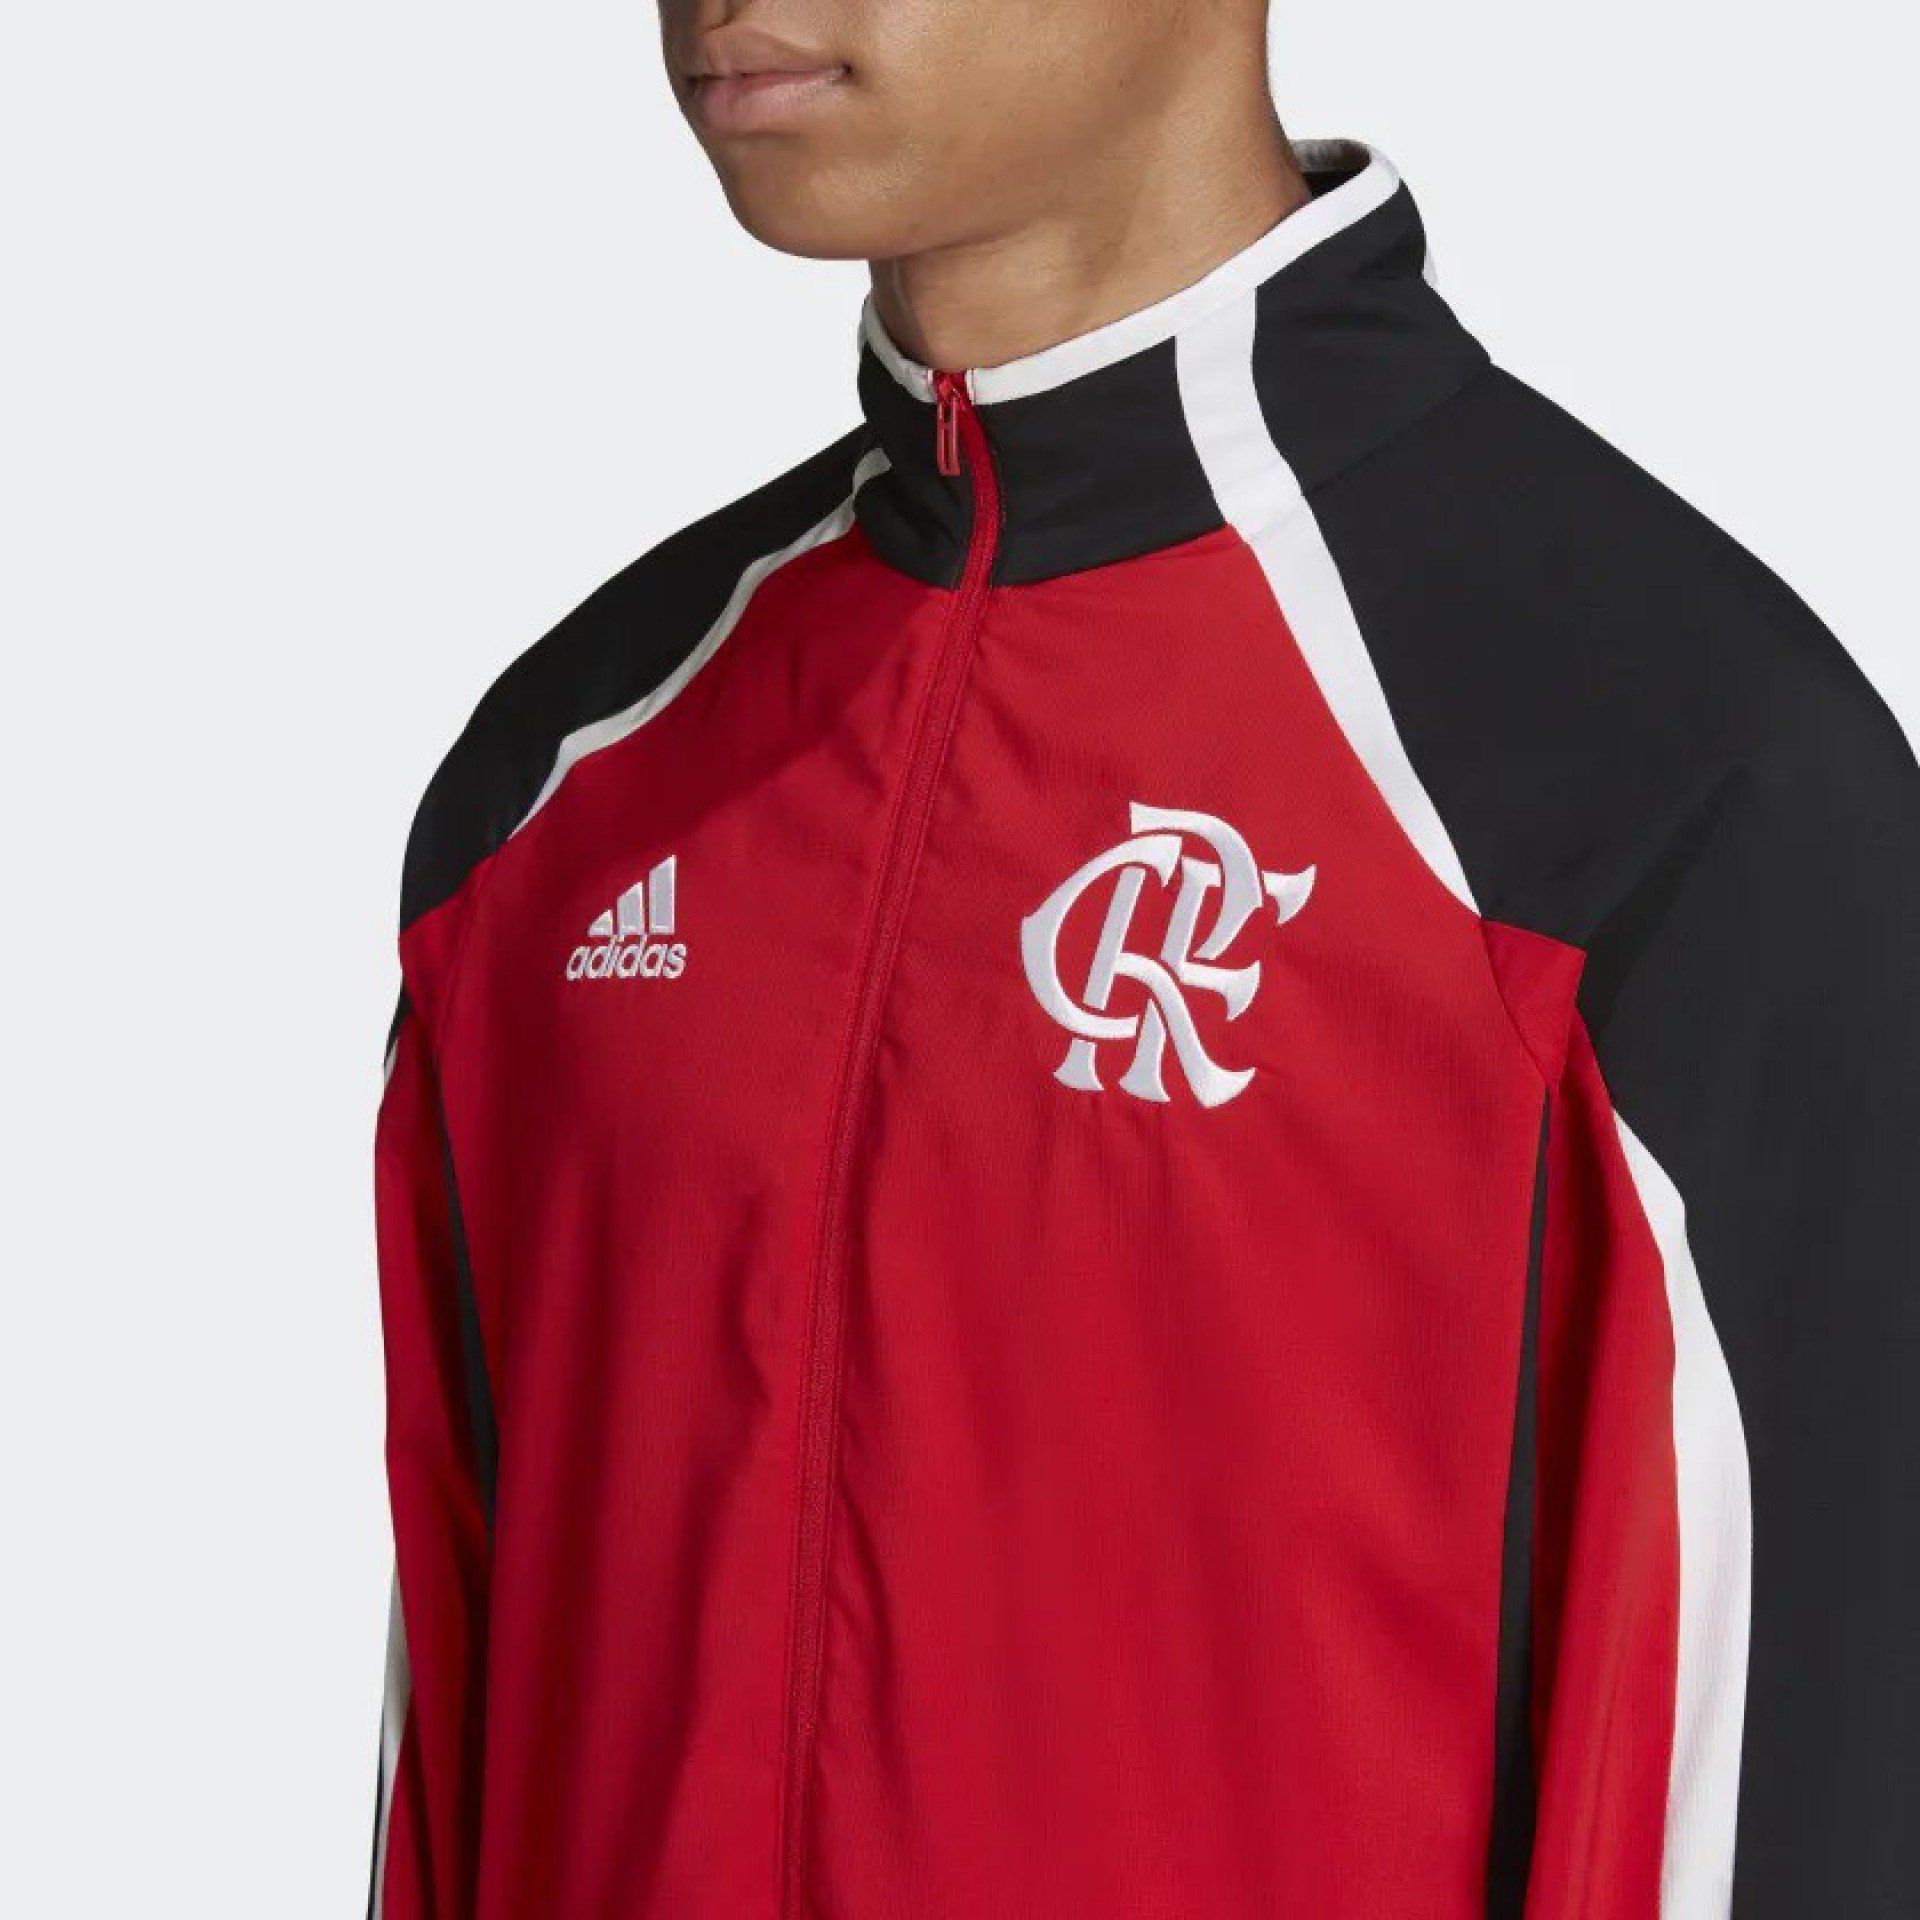 Novo casaco Teamgeist do Flamengo - Reprodução